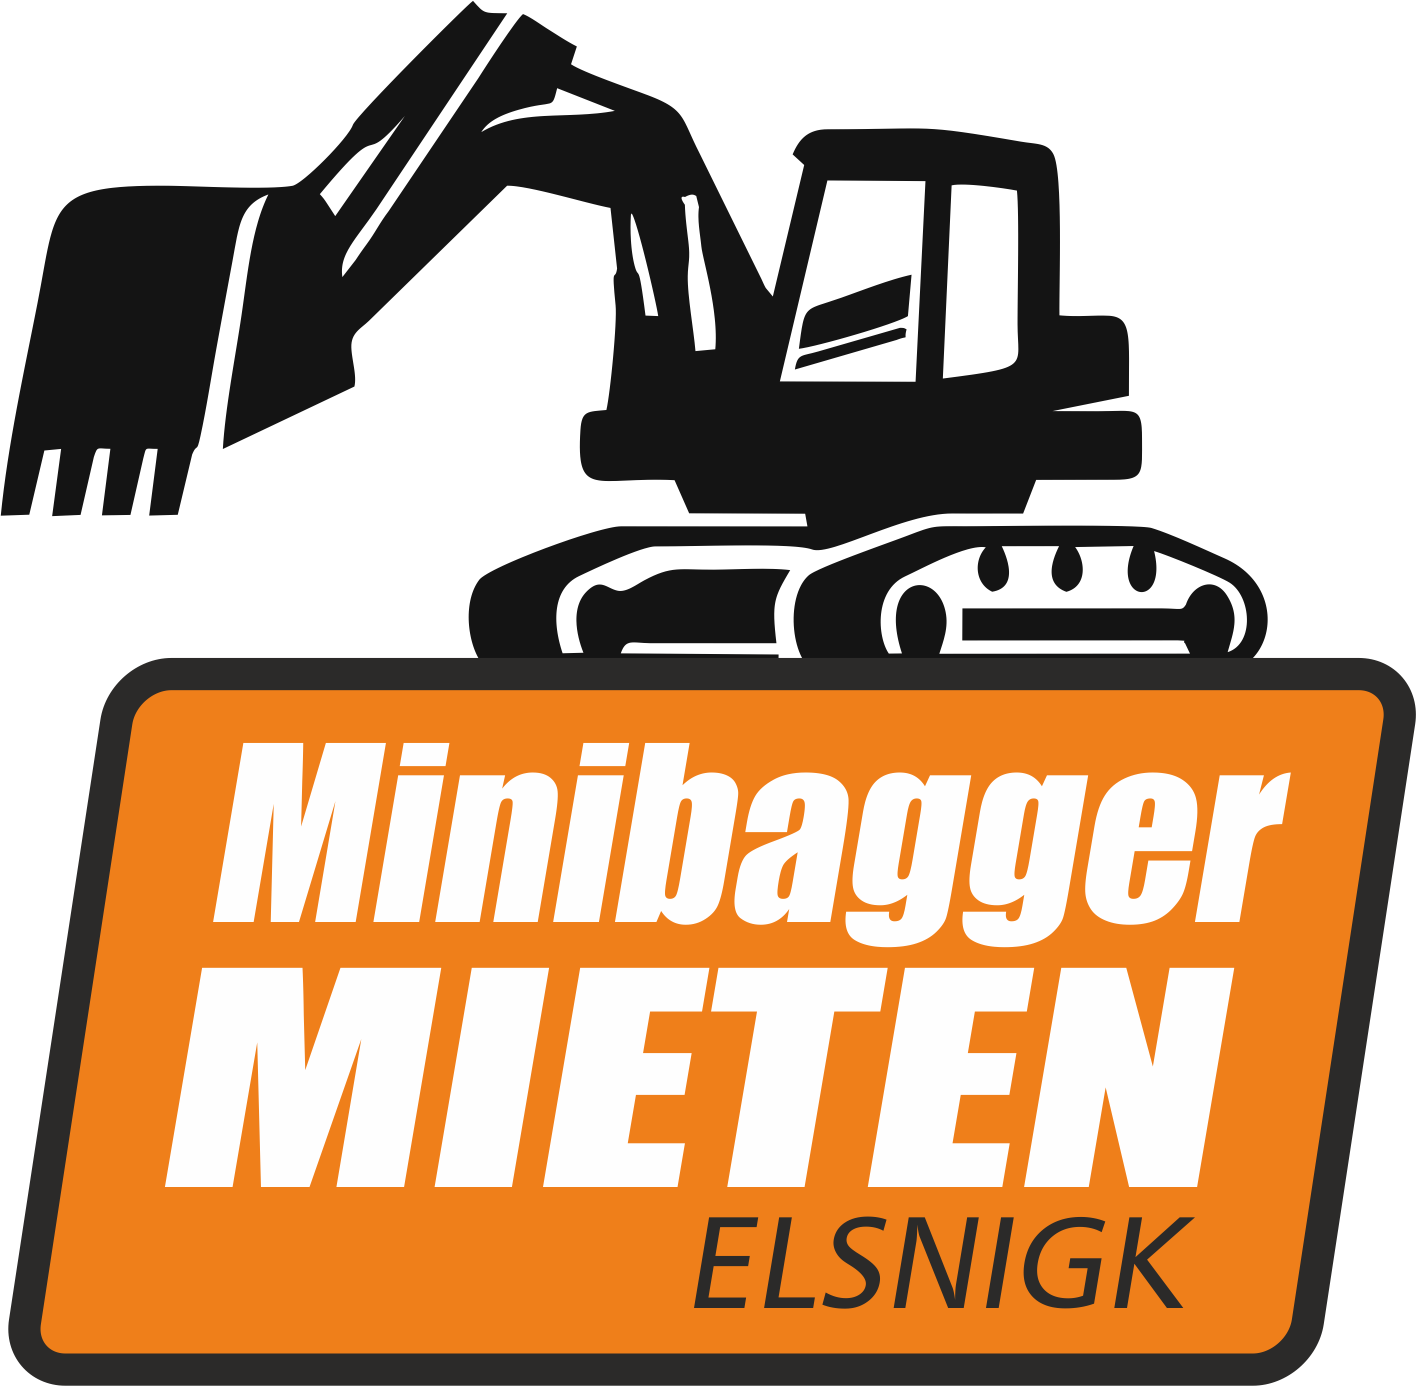 Minibagger mieten in Elsnigk, Köthen, Dessau, Bernburg und Region